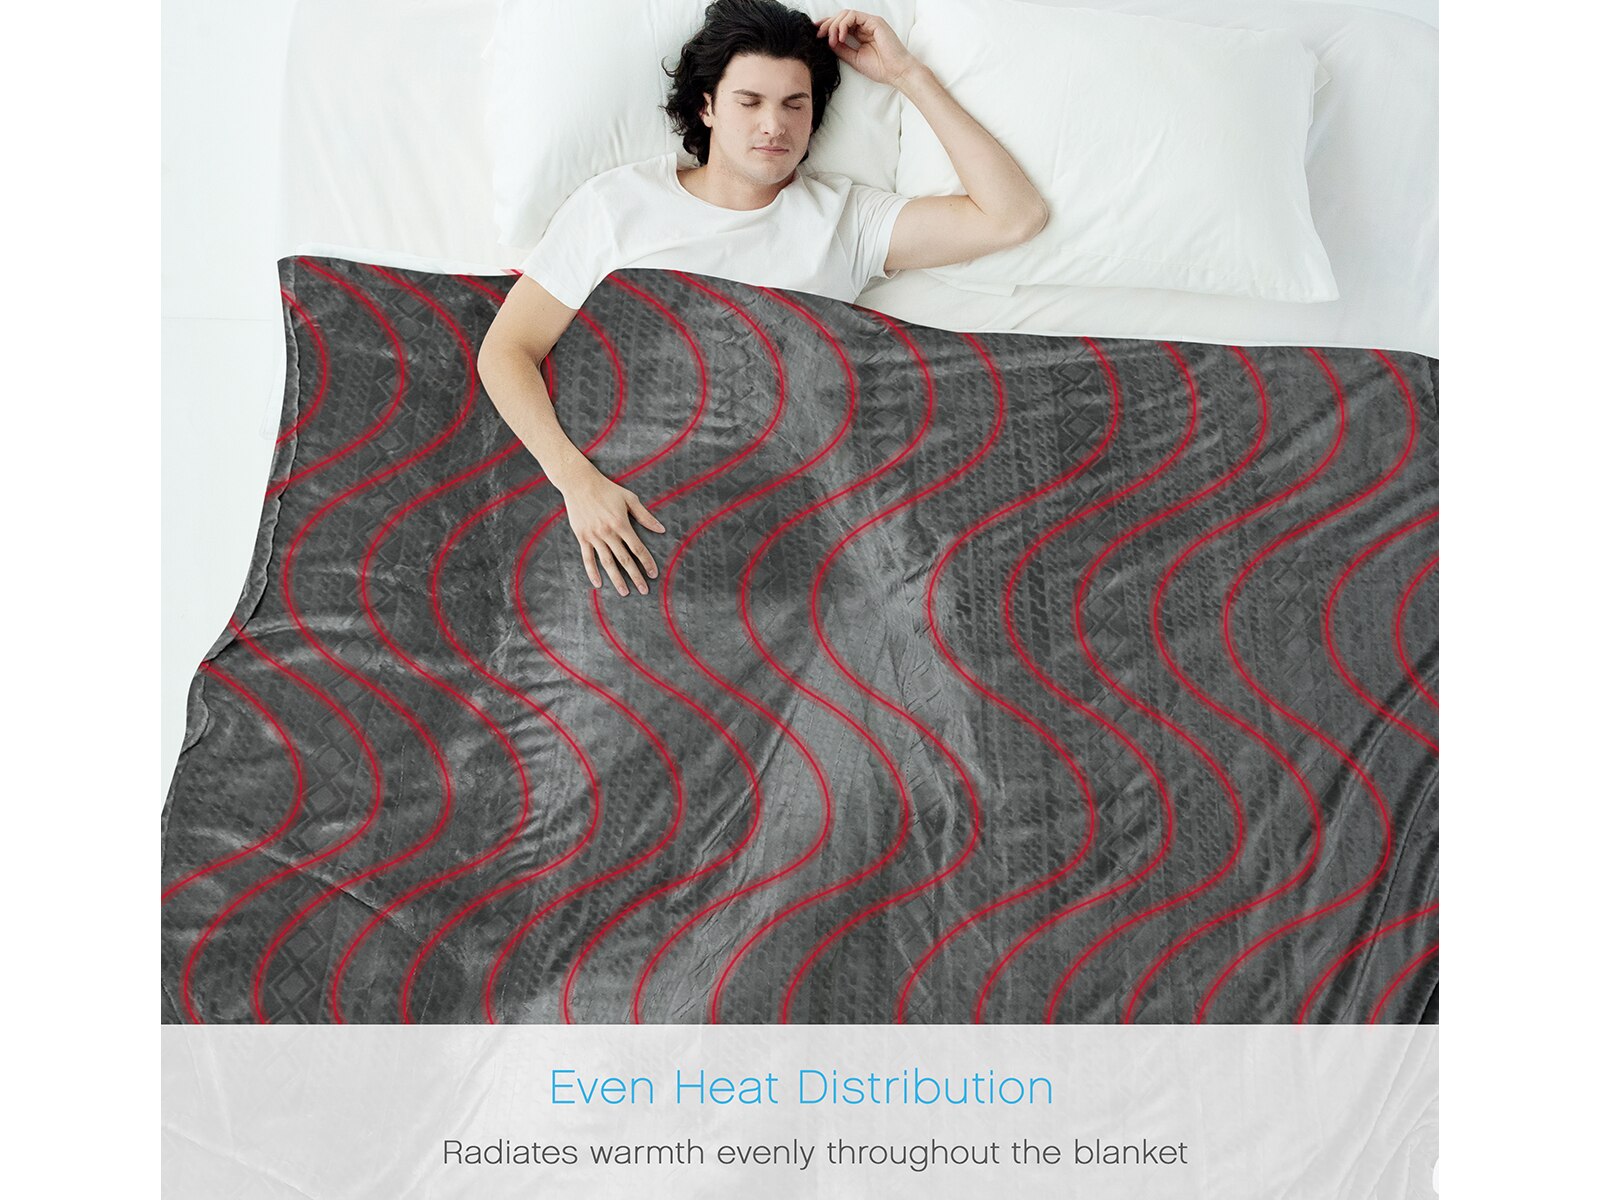 PureRelief Deluxe Heated Blanket